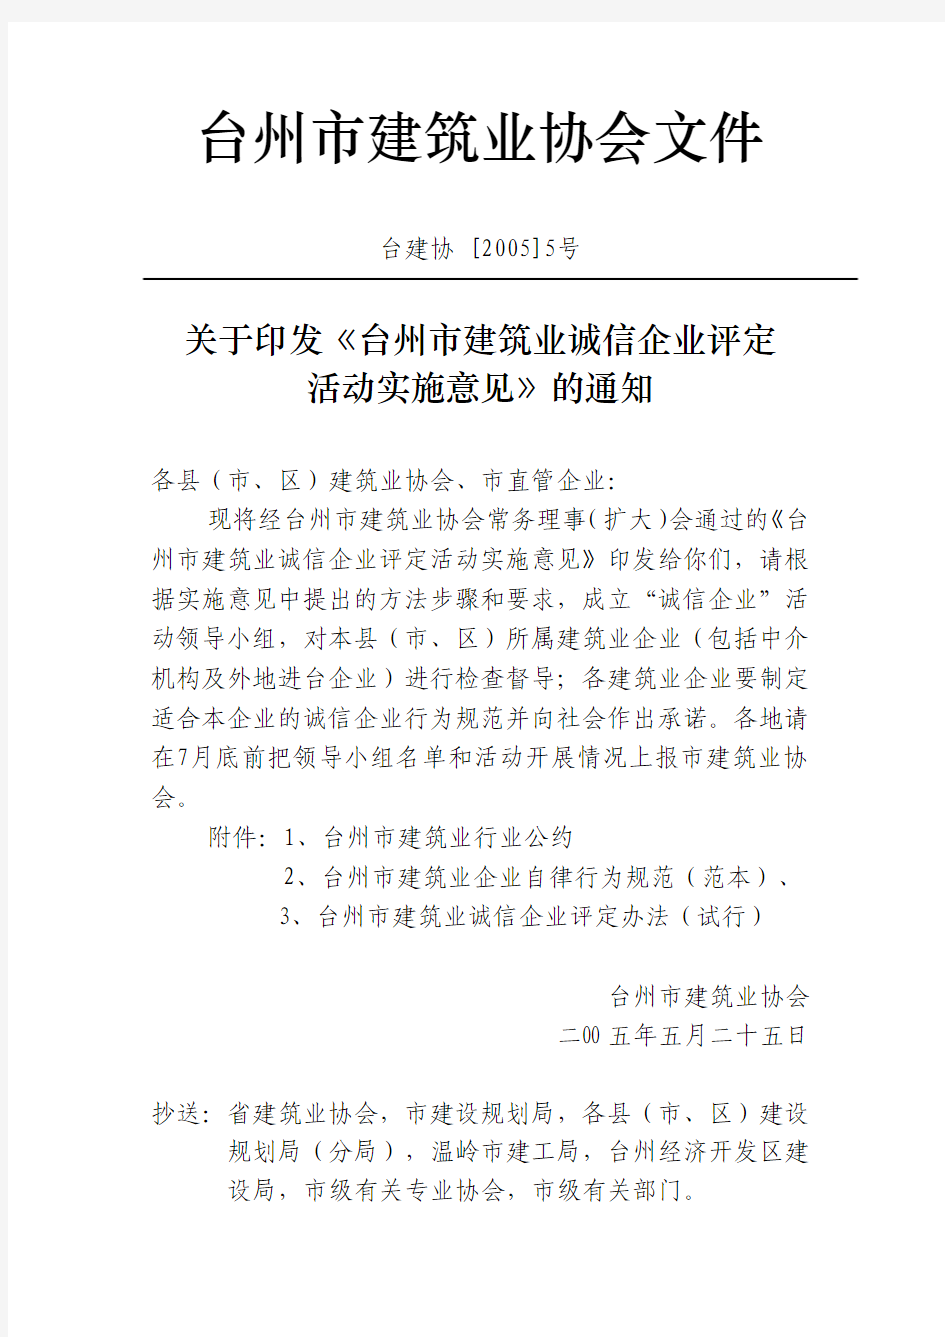 台州市建筑业协会文件